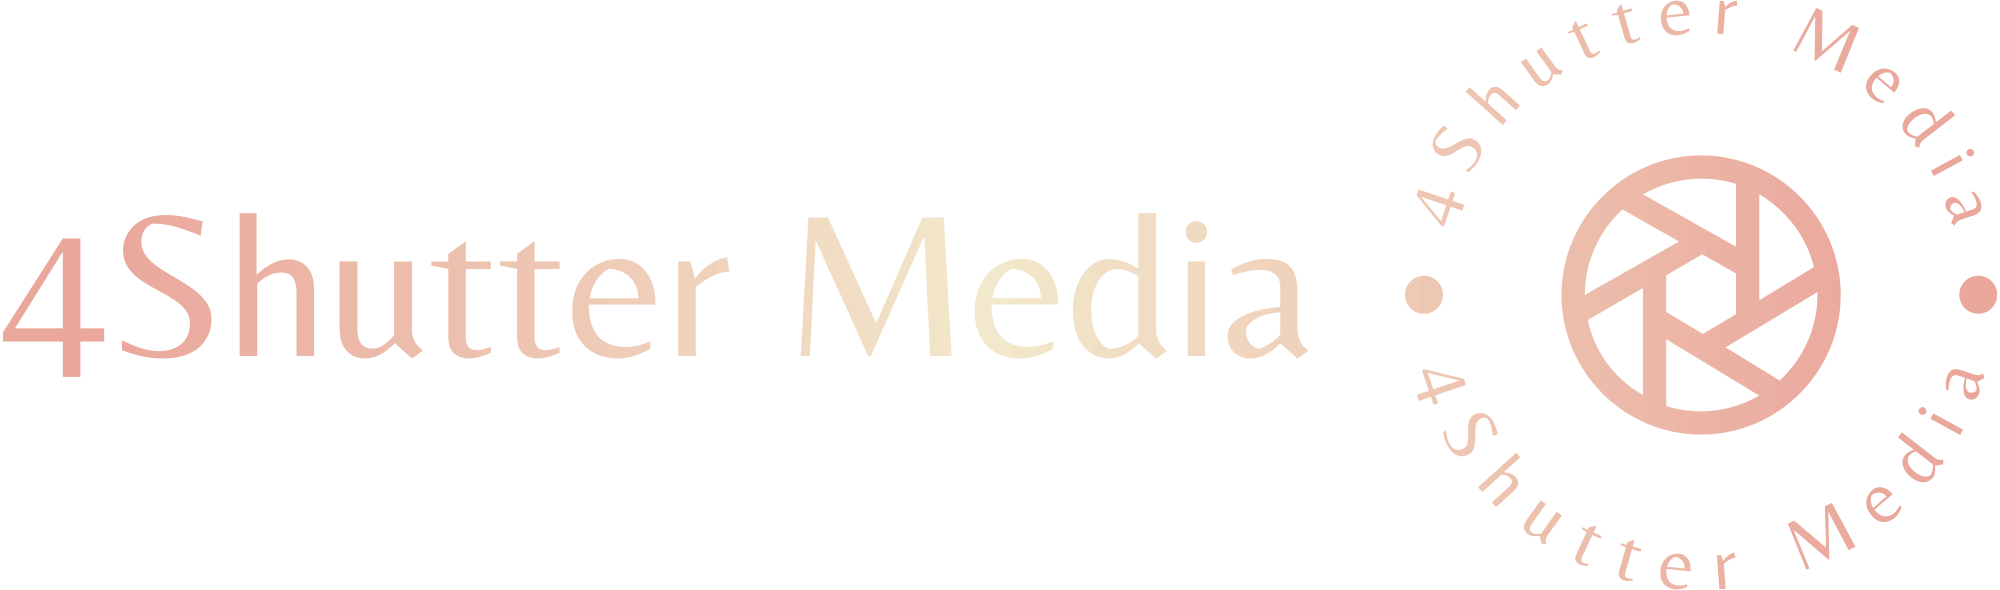 4Shutter Media logo